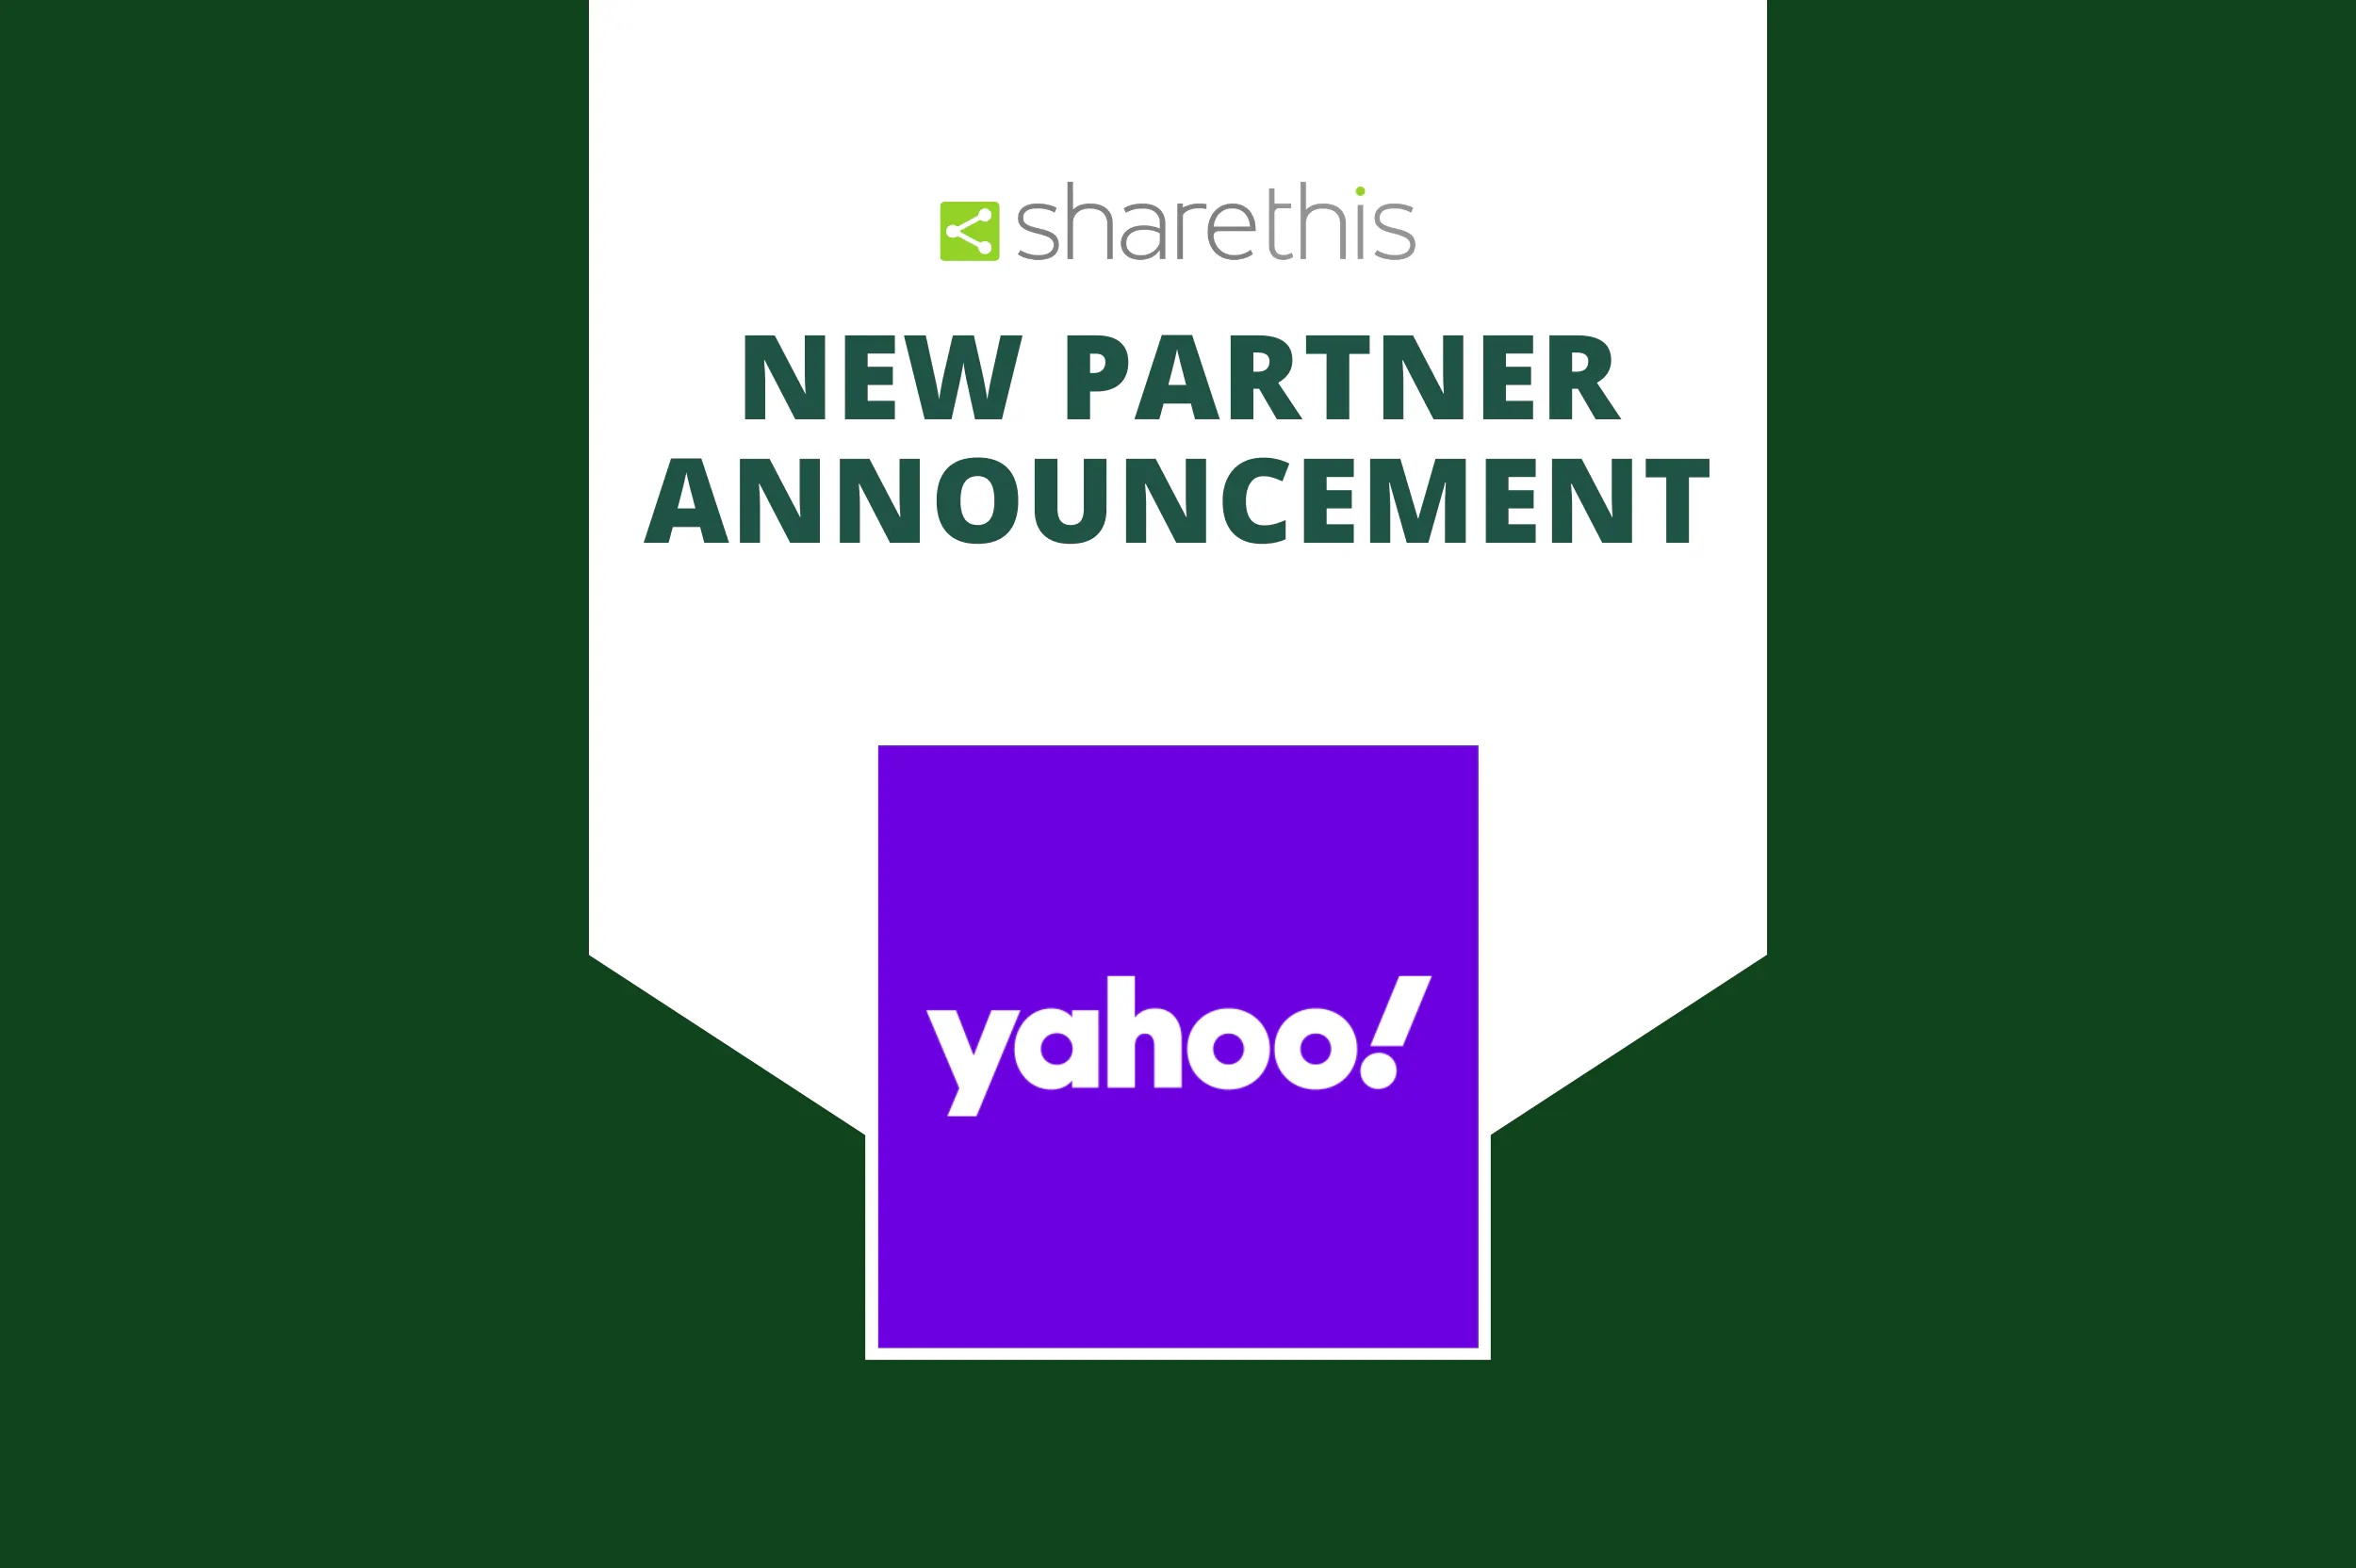 Ankündigung einer neuen Partnerschaft mit Yahoo ConnectID